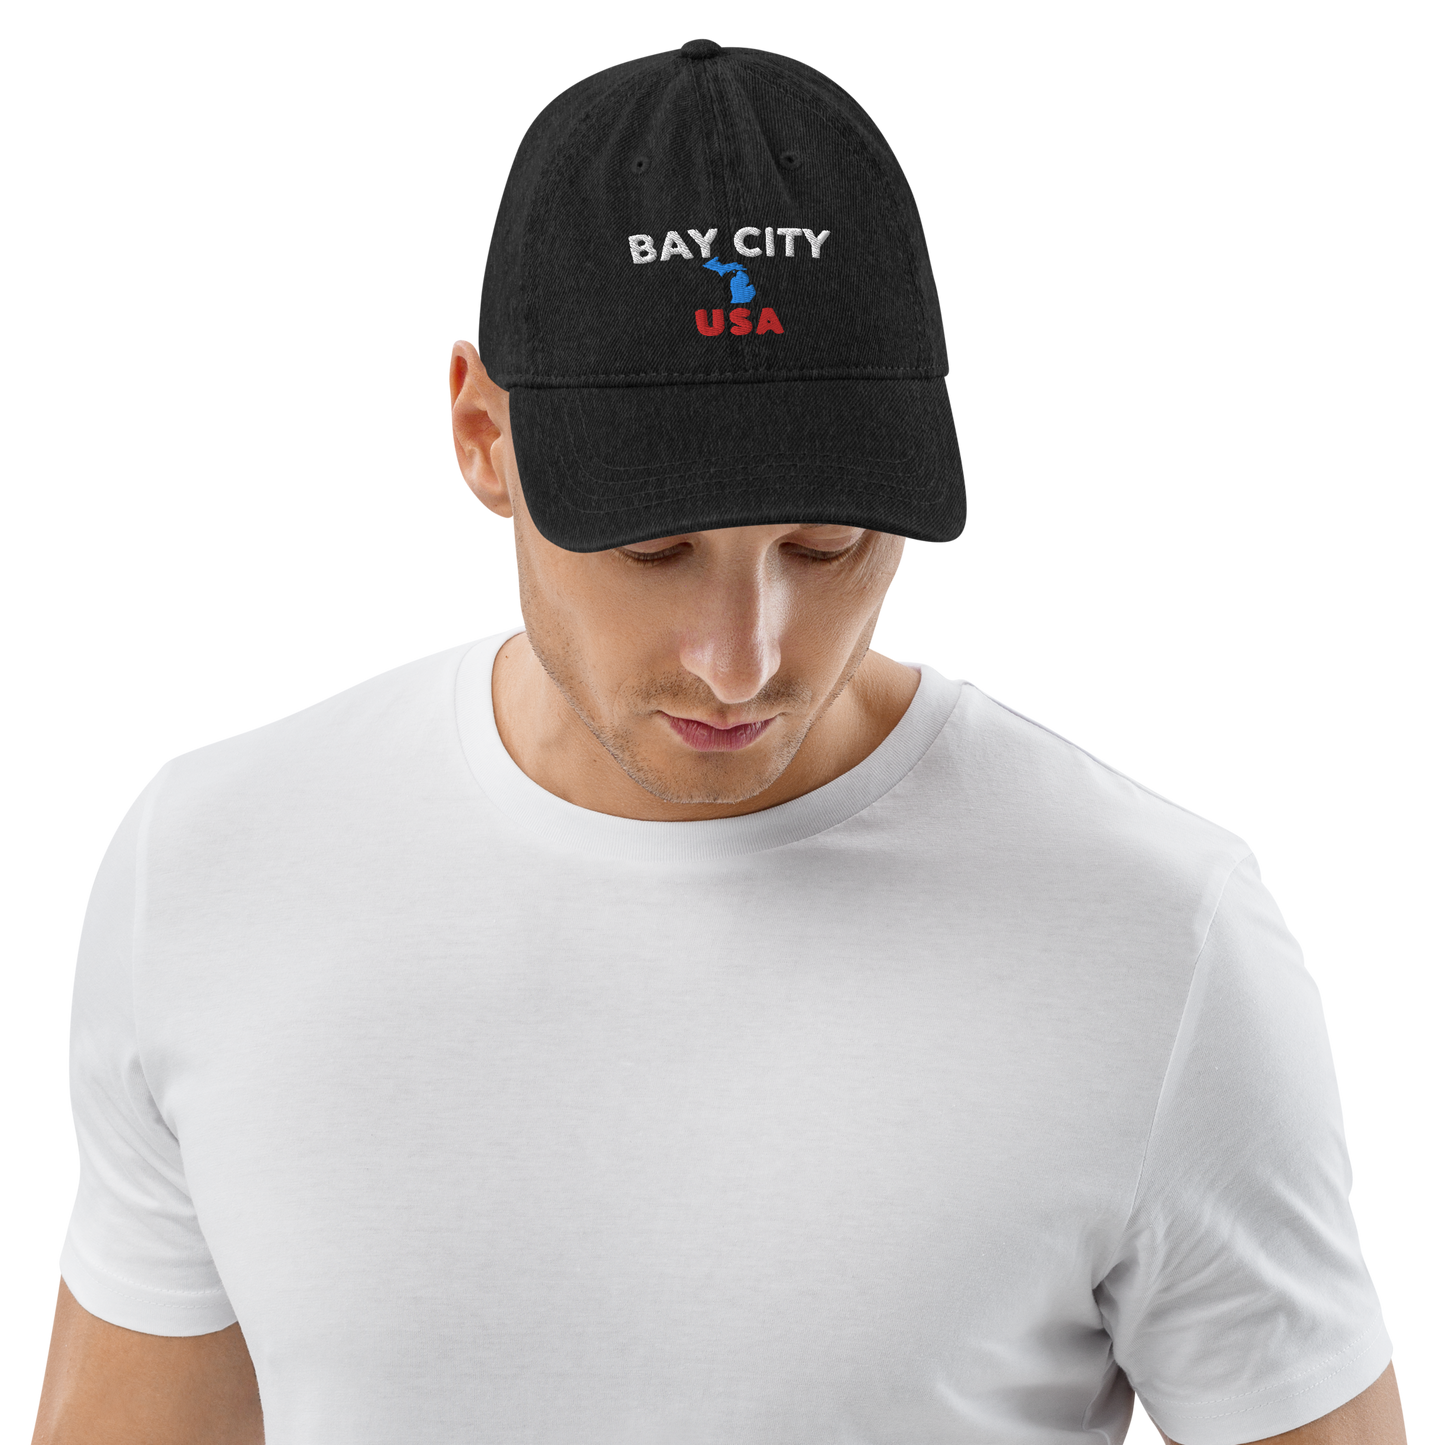 'Bay City USA' Denim Baseball Cap (w/ Michigan Outline)